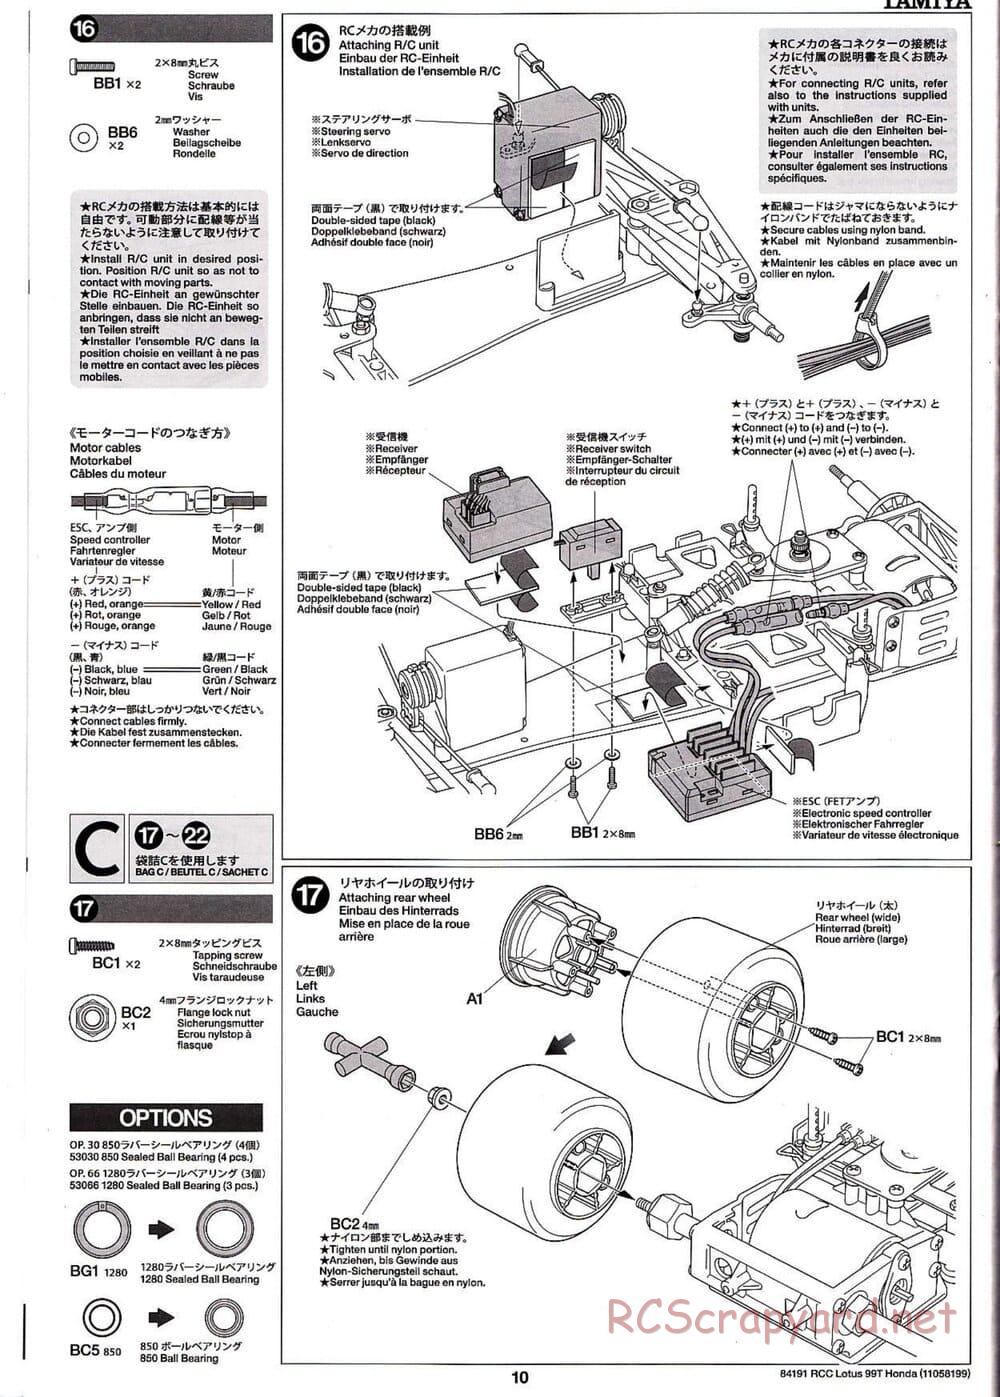 Tamiya - Team Lotus 99T Honda - F103 Chassis - Manual - Page 10